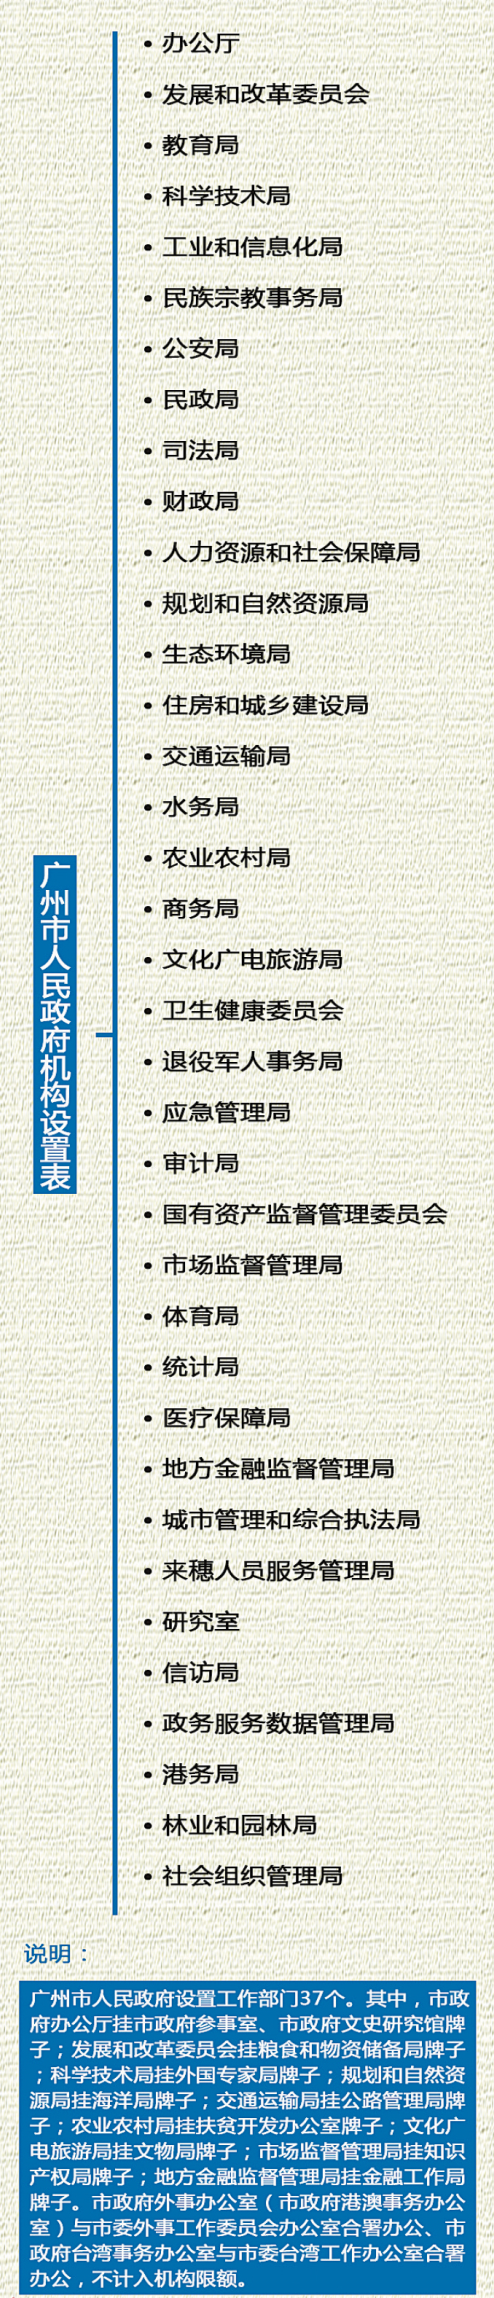 廣州市人民政府機構設定